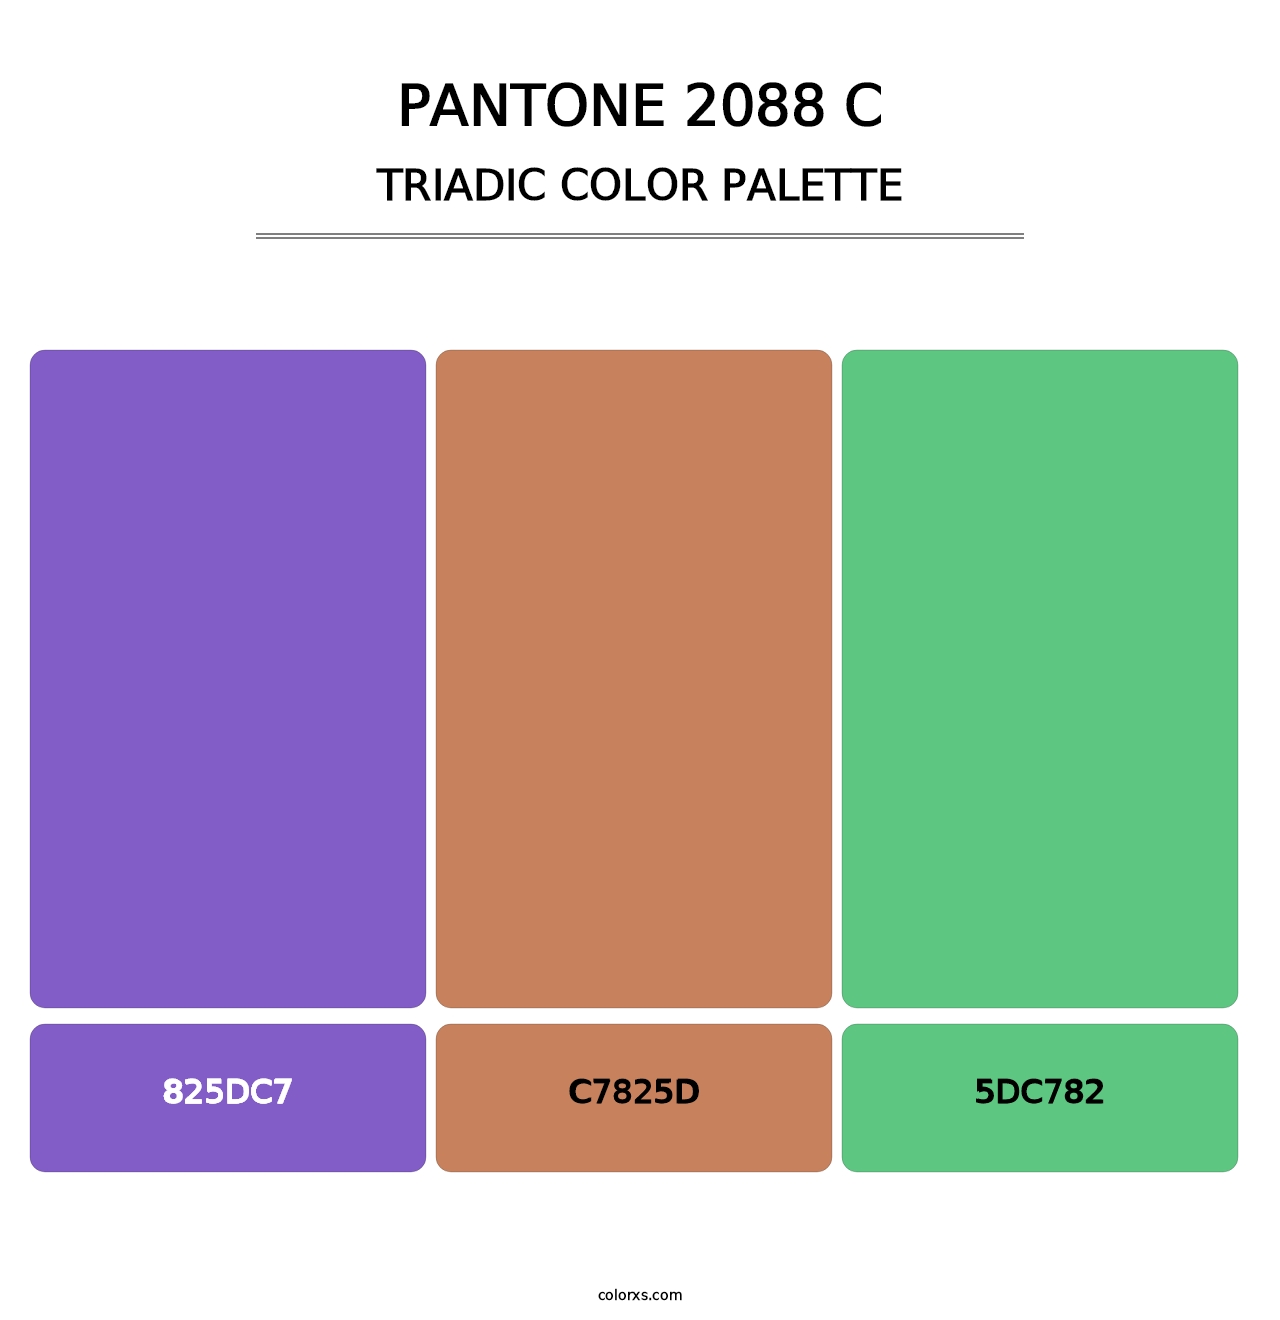 PANTONE 2088 C - Triadic Color Palette